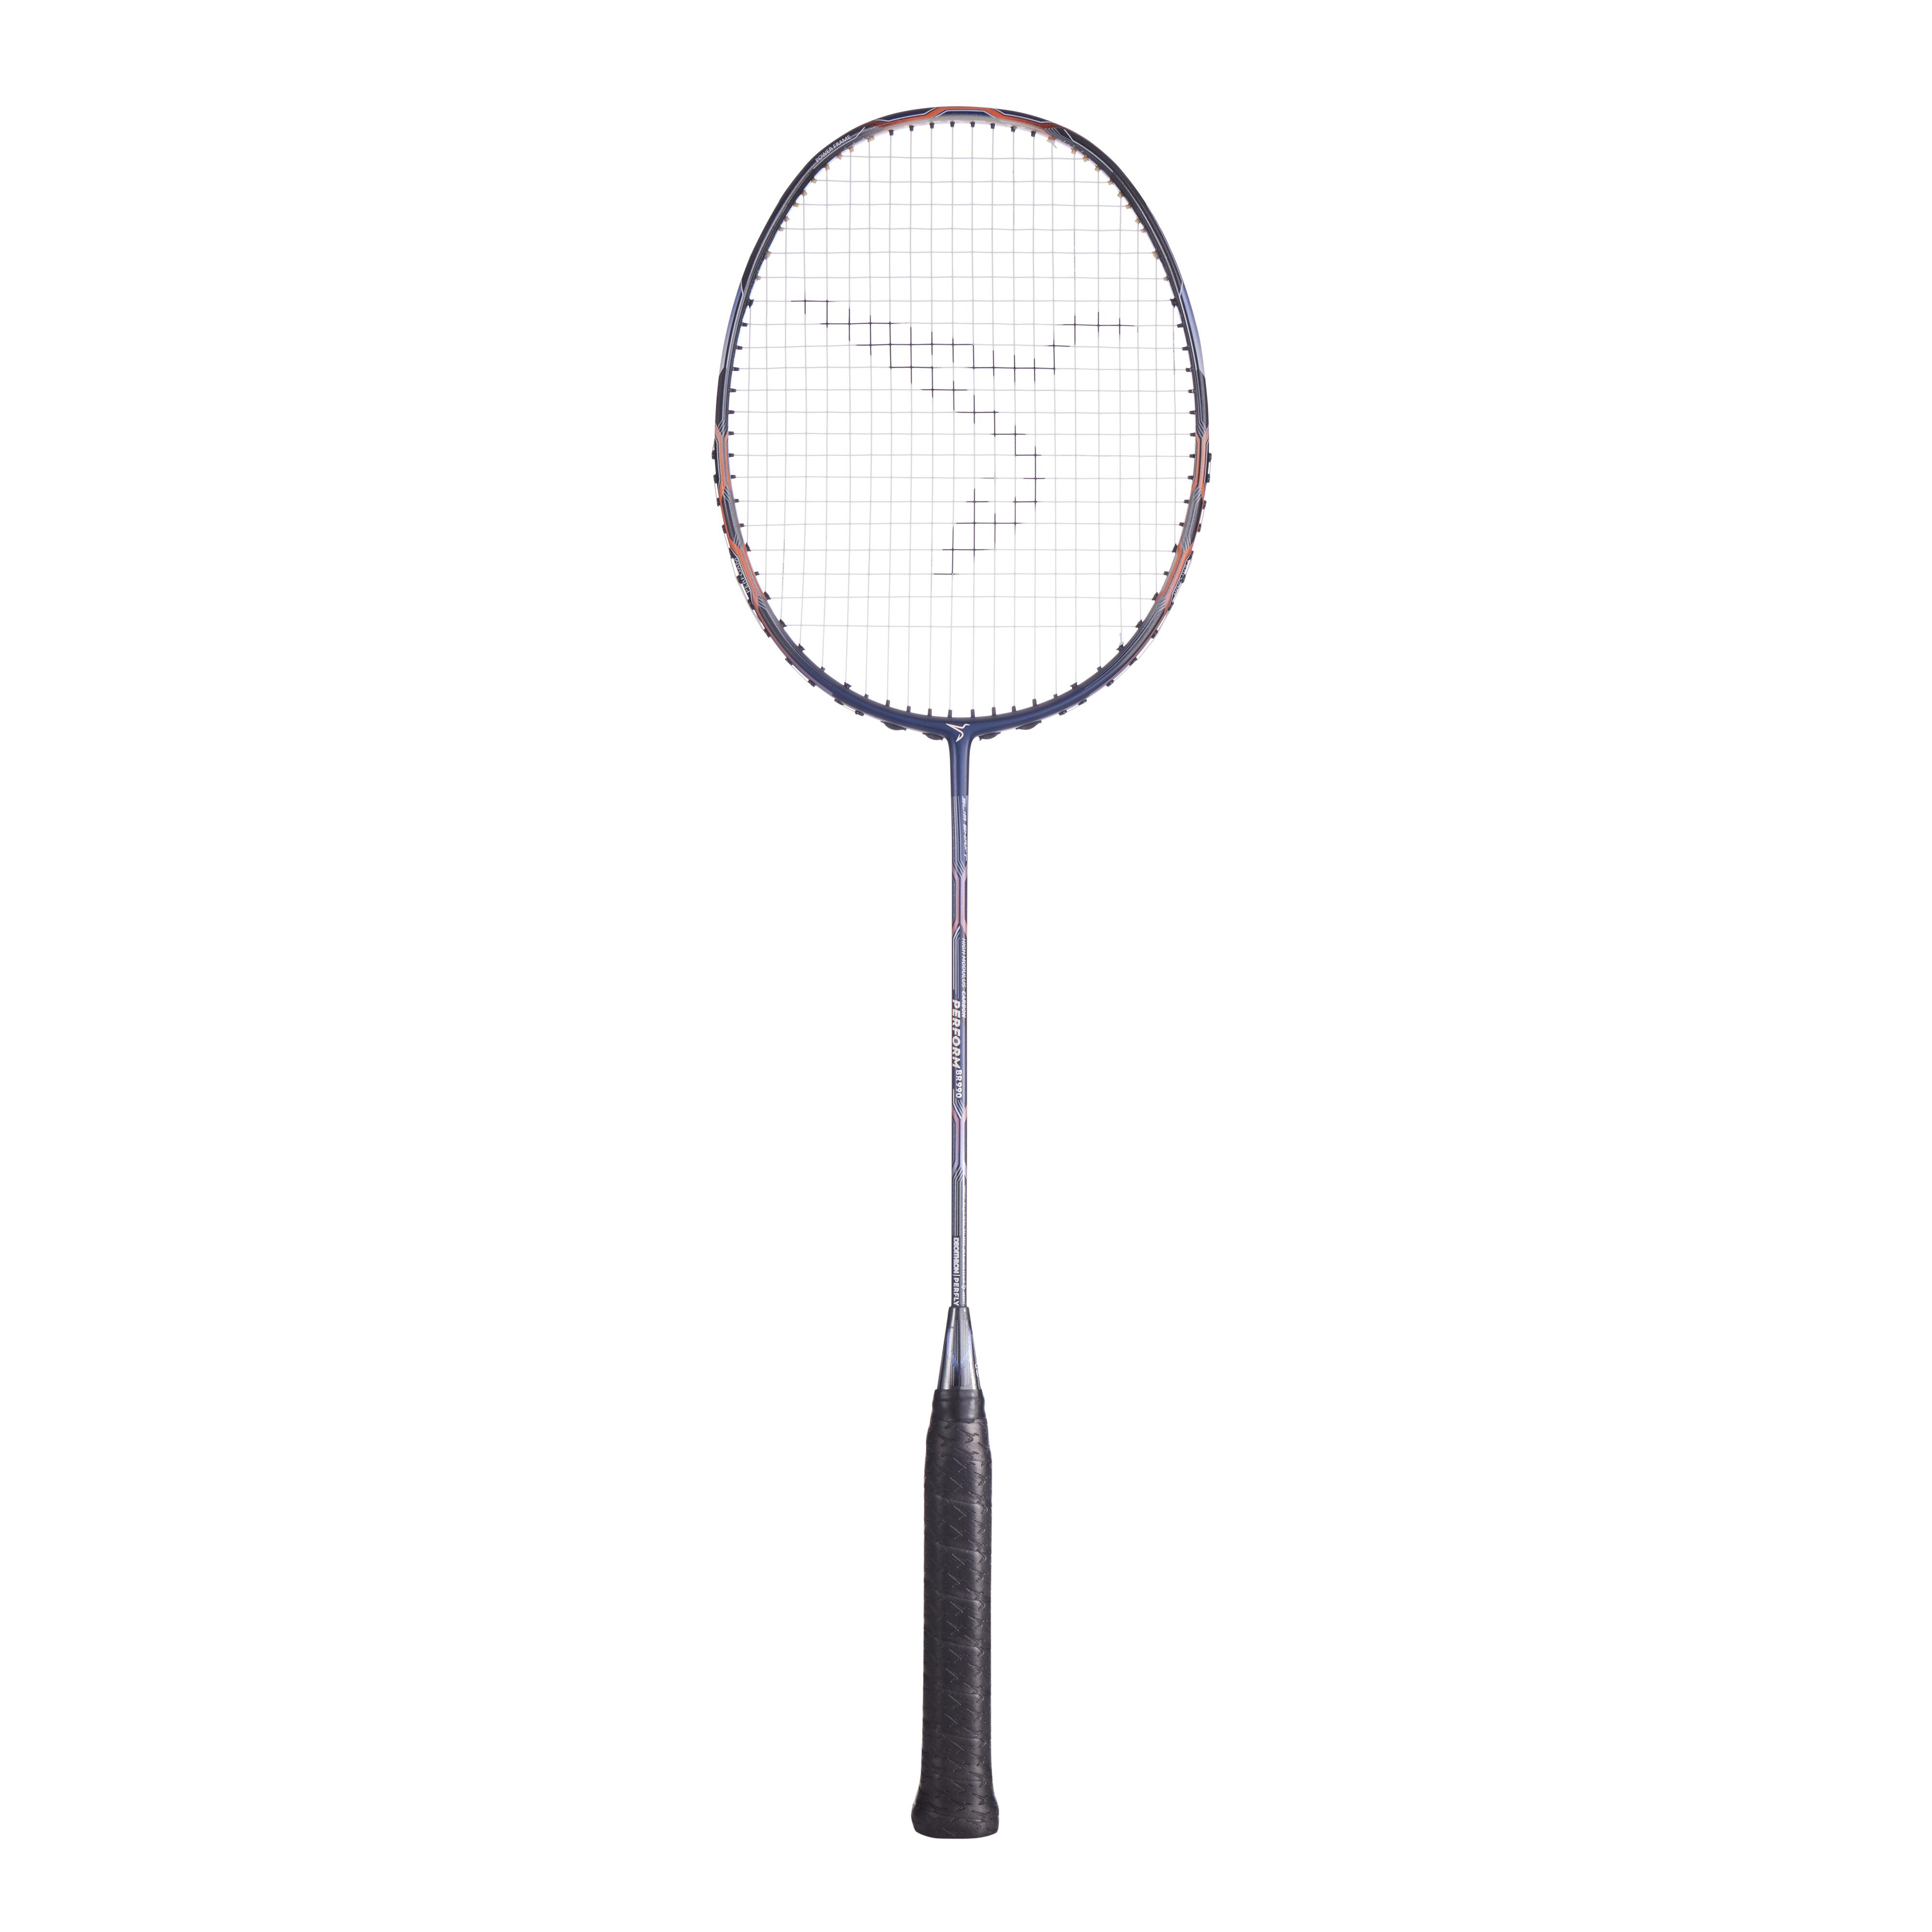 Buy Badminton Adult Racket Br 990 P Blk Red Online Decathlon